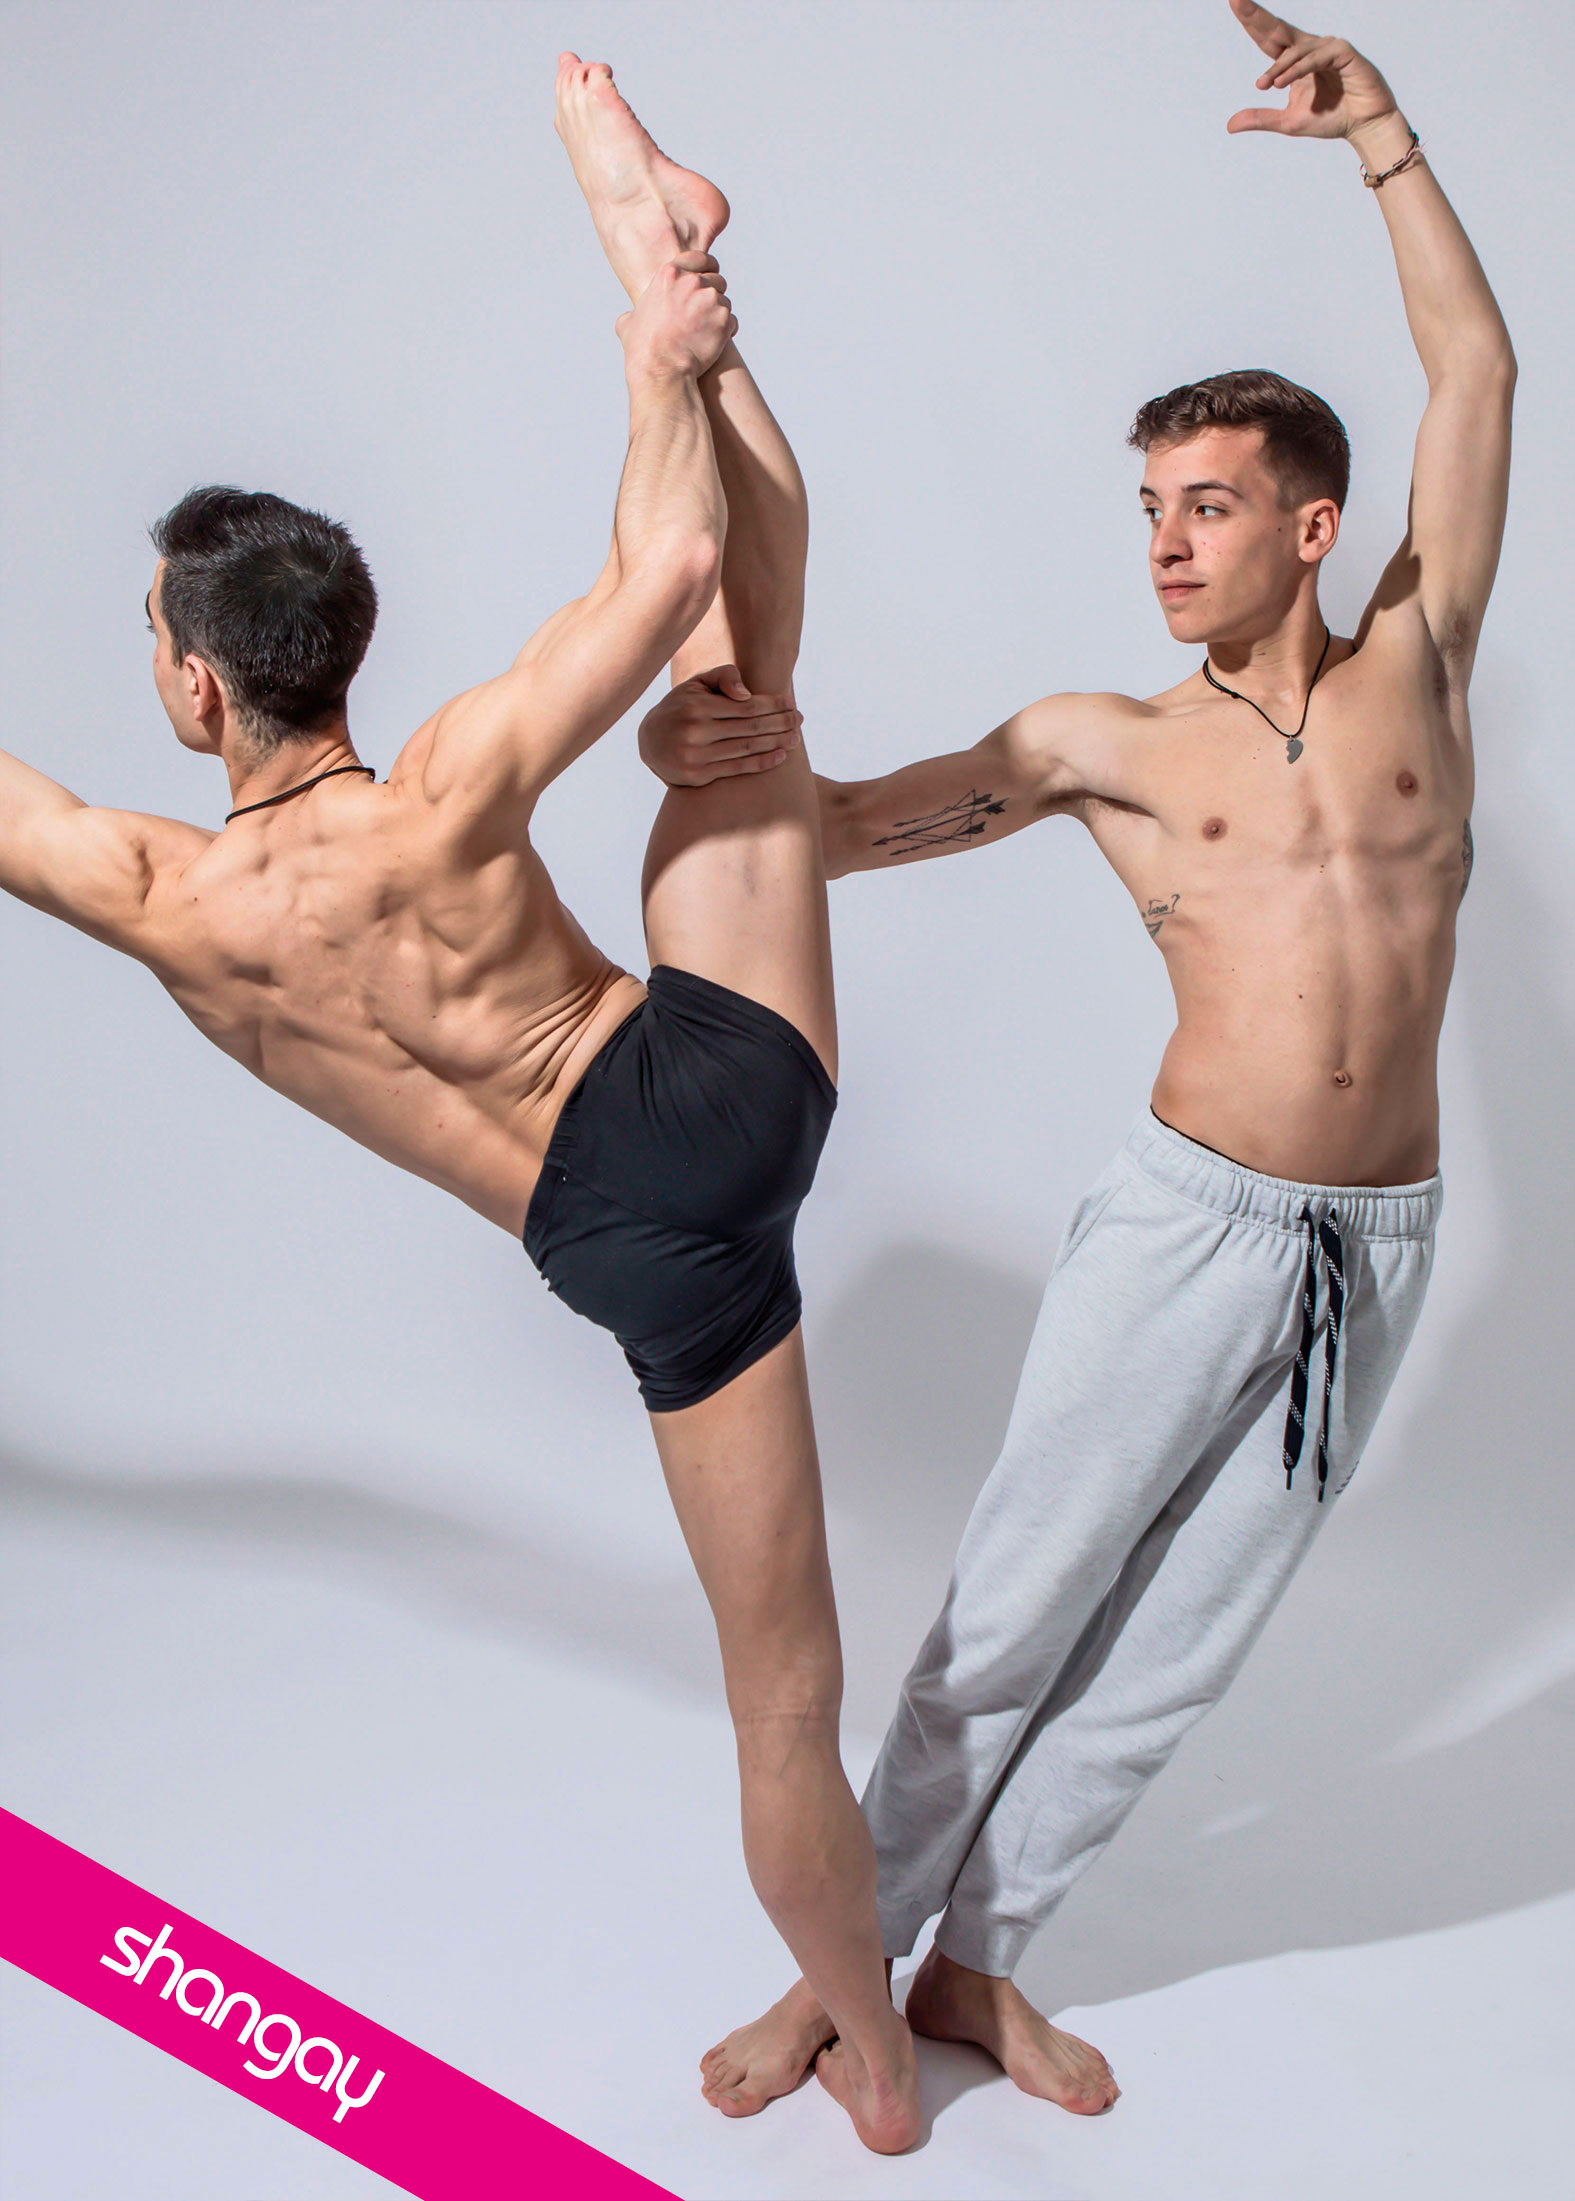 Pedro Cabañas y Óscar Trejo, una pareja gay de campeones europeos que visibiliza el deporte LGTB